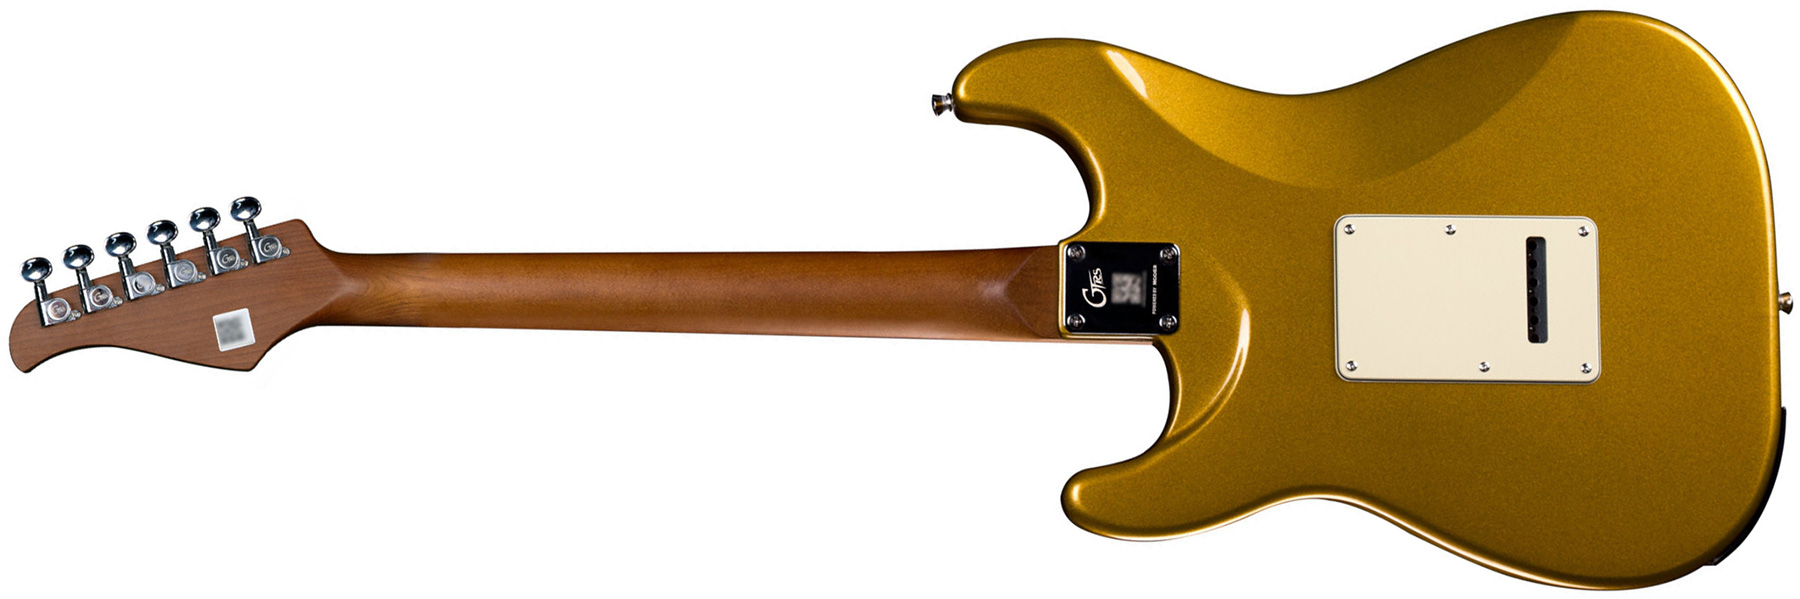 Mooer Gtrs S800 Hss Trem Rw - Gold - Midi-/Digital-/Modeling Gitarren - Variation 1